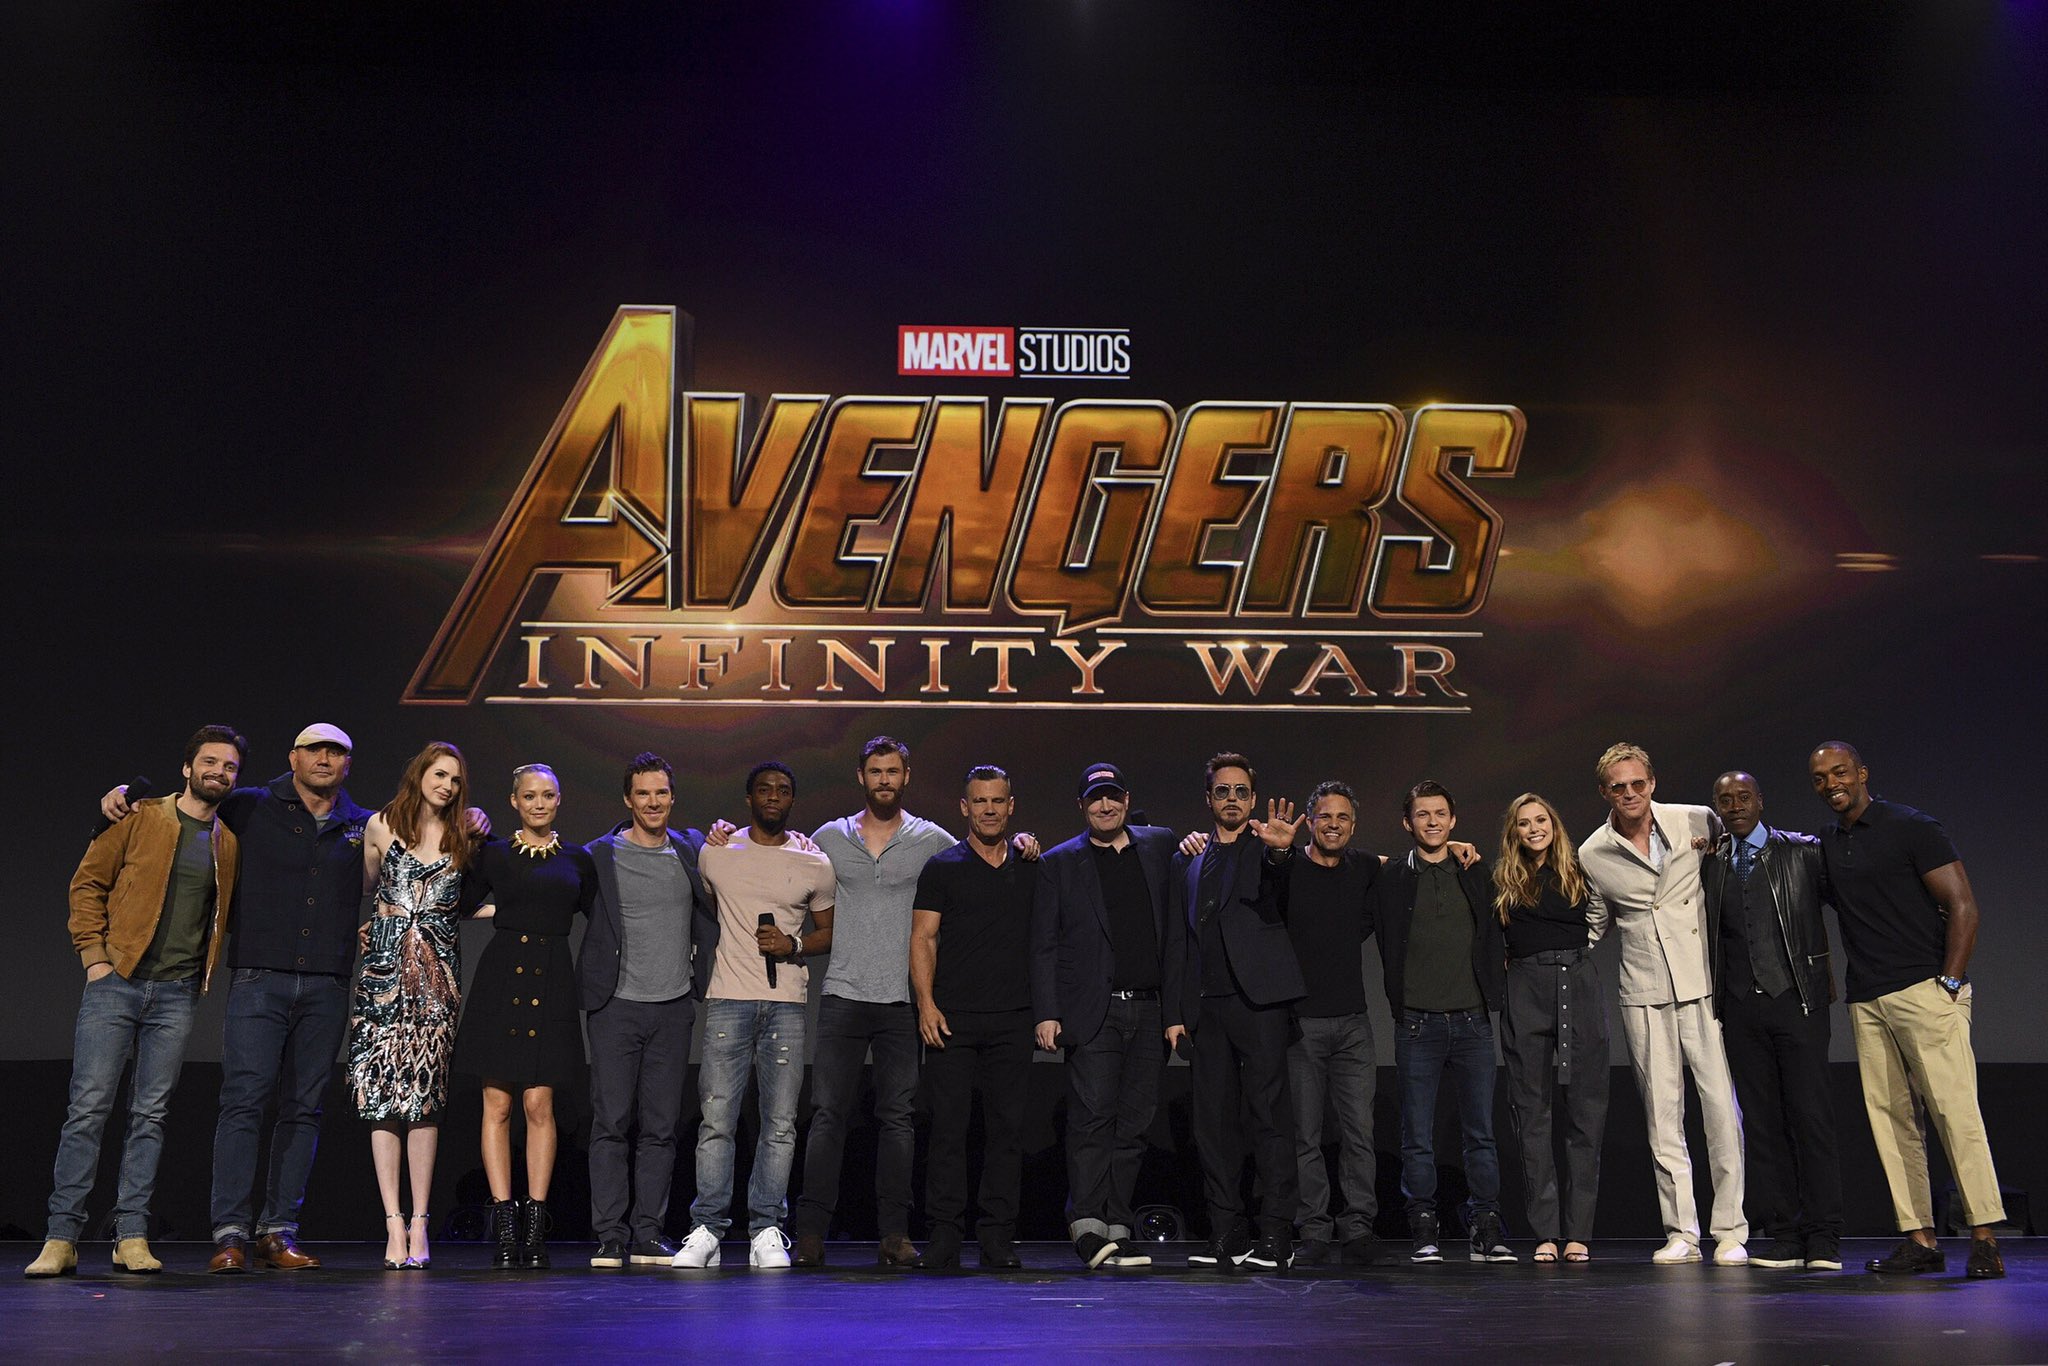 Avengers infinity war cast